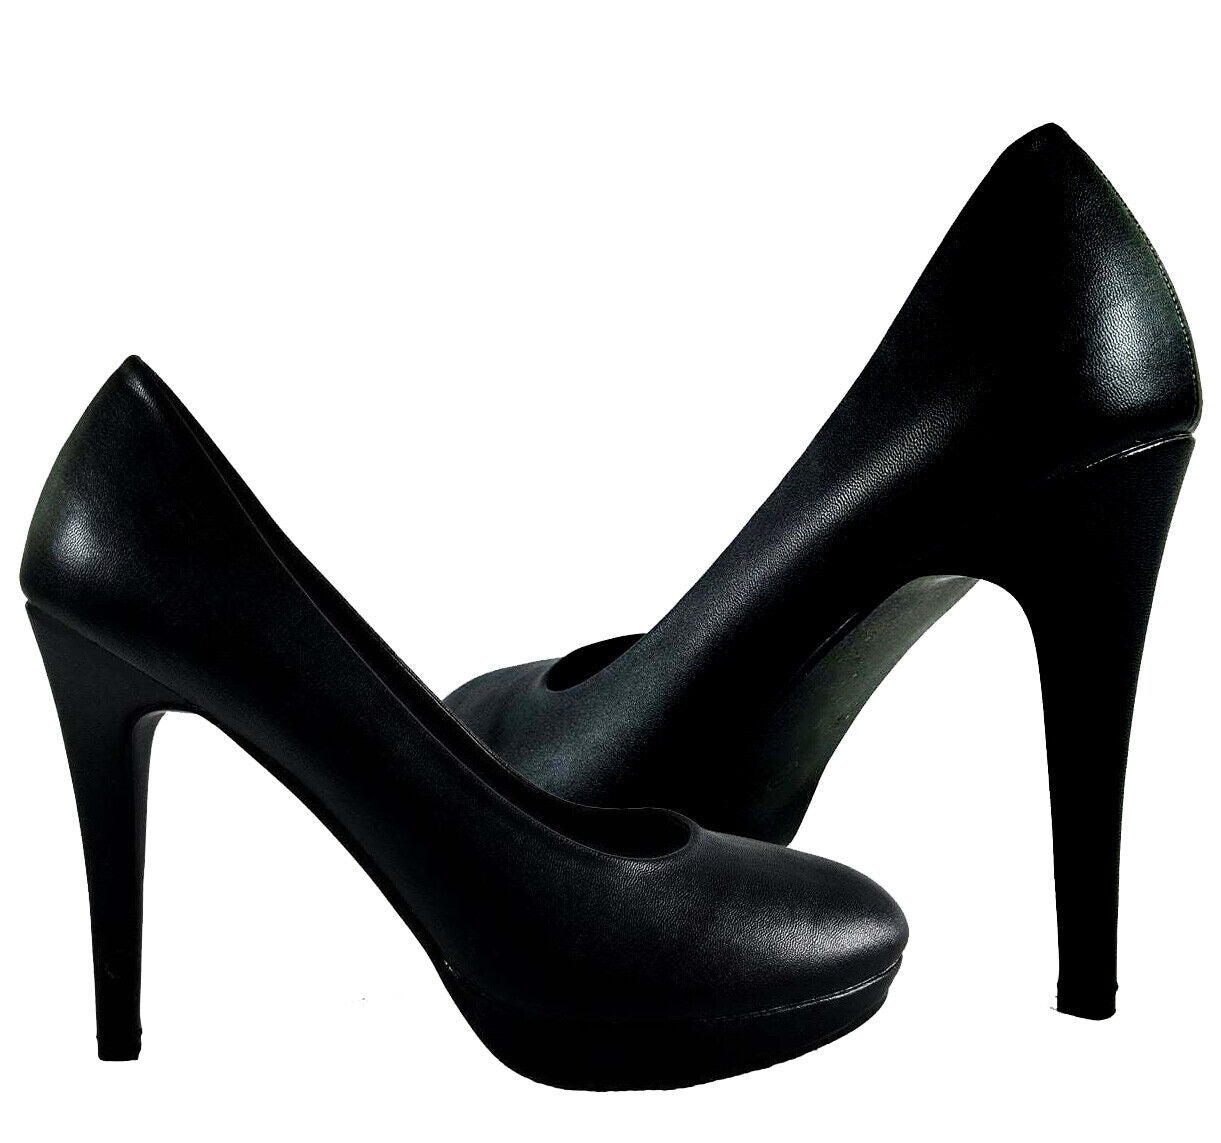 Dress Shoes 16cm Super High Heels Bling Black Pumps Fetish Stilettos Model  Pole Dance Stripper Show Shiny Unisex Size45 46 From Doutui, $54.78 |  DHgate.Com